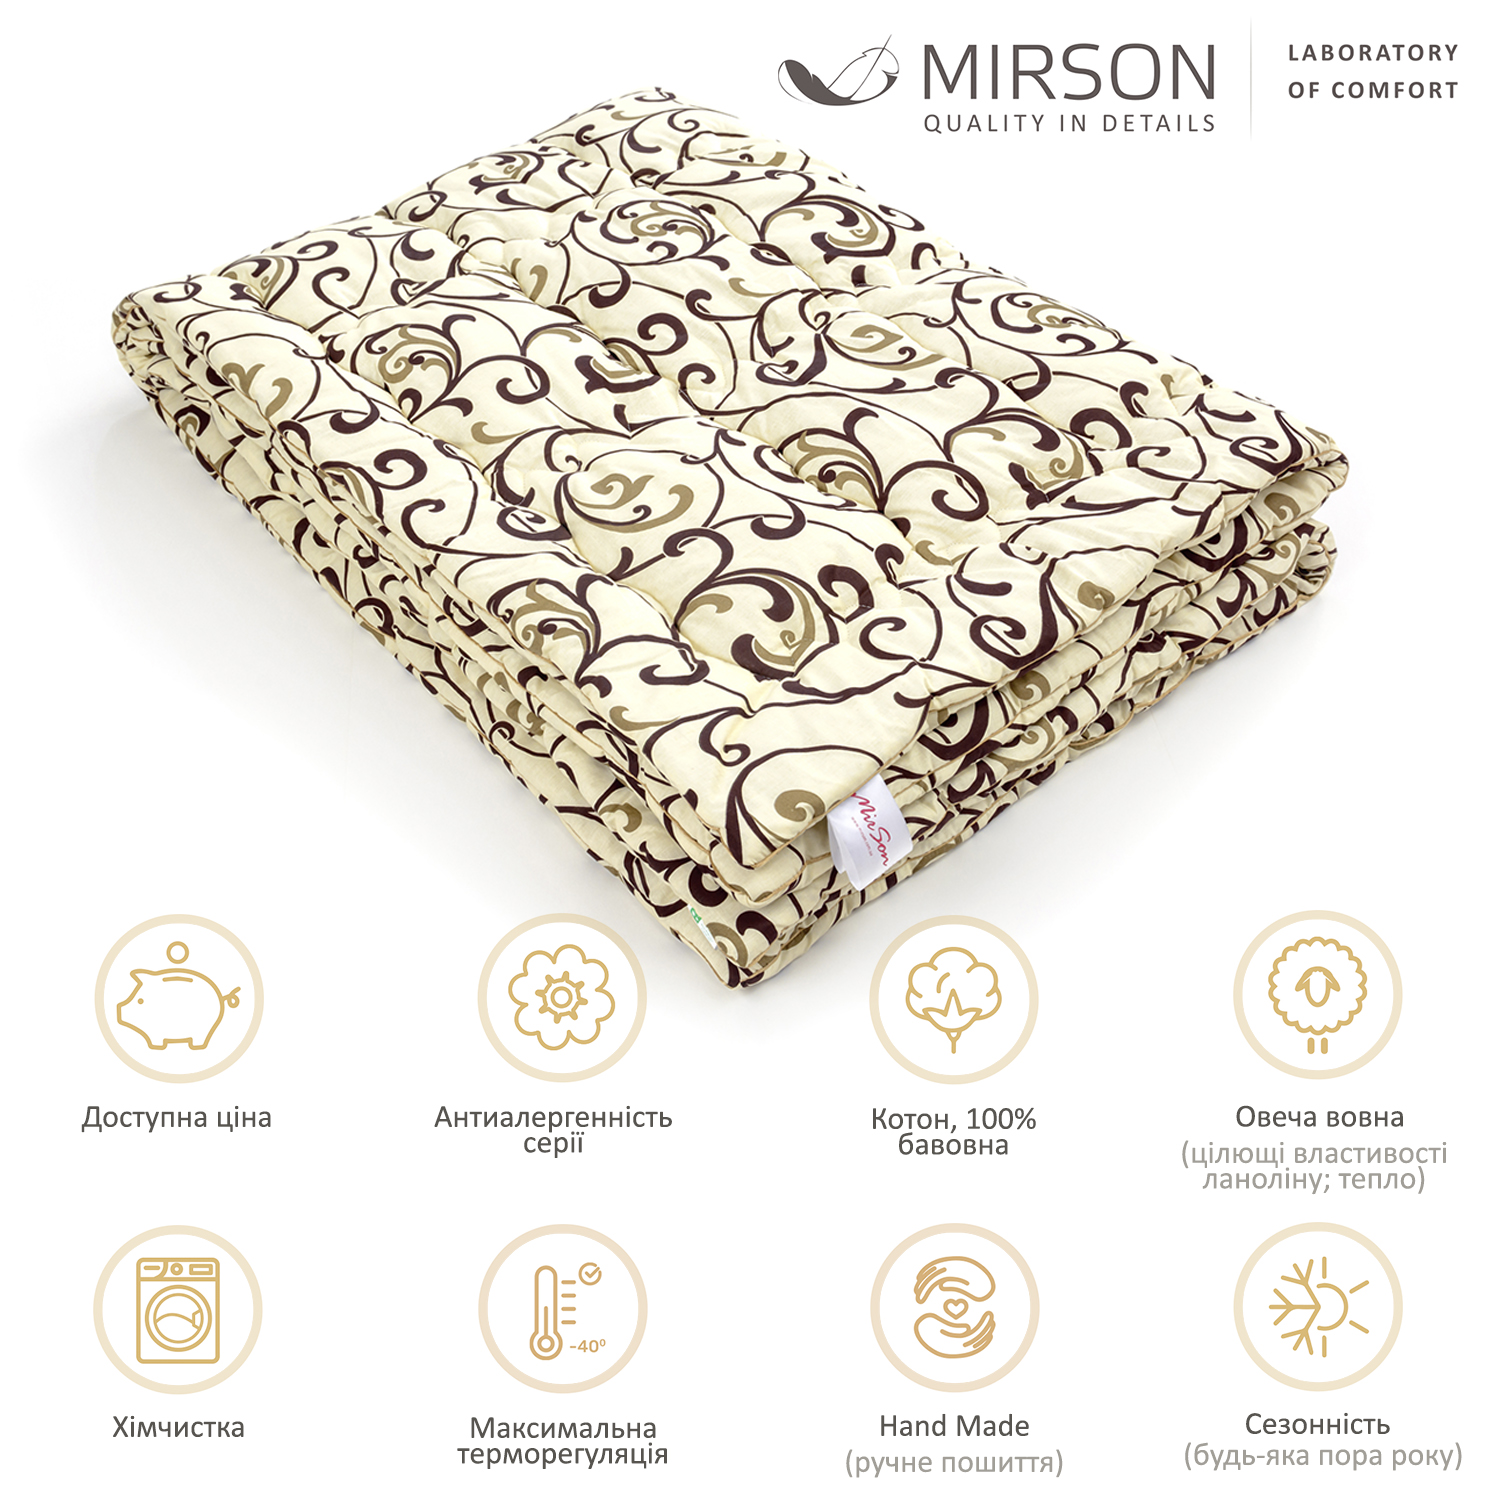 Одеяло шерстяное MirSon Hand Made №162, демисезонное, 200x220 см, бежевое с узором - фото 5